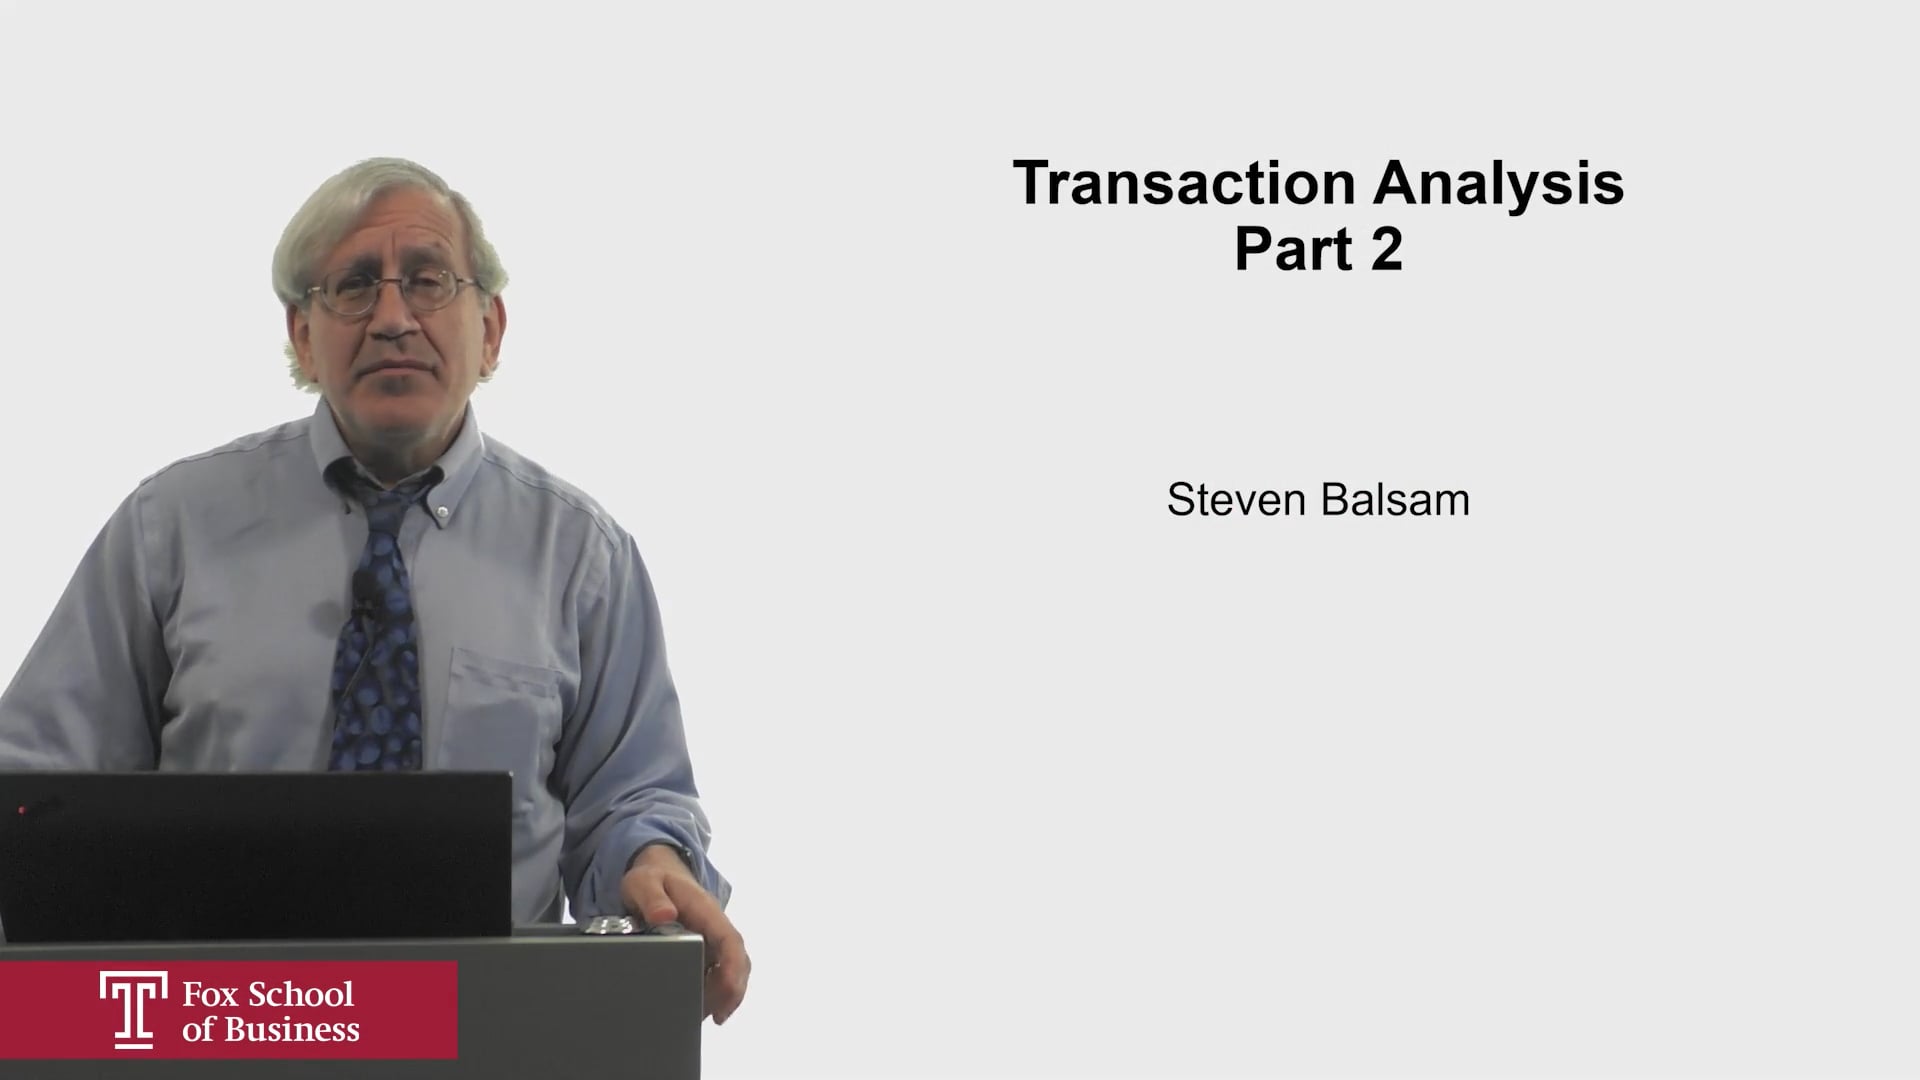 Transaction Analysis Part 2